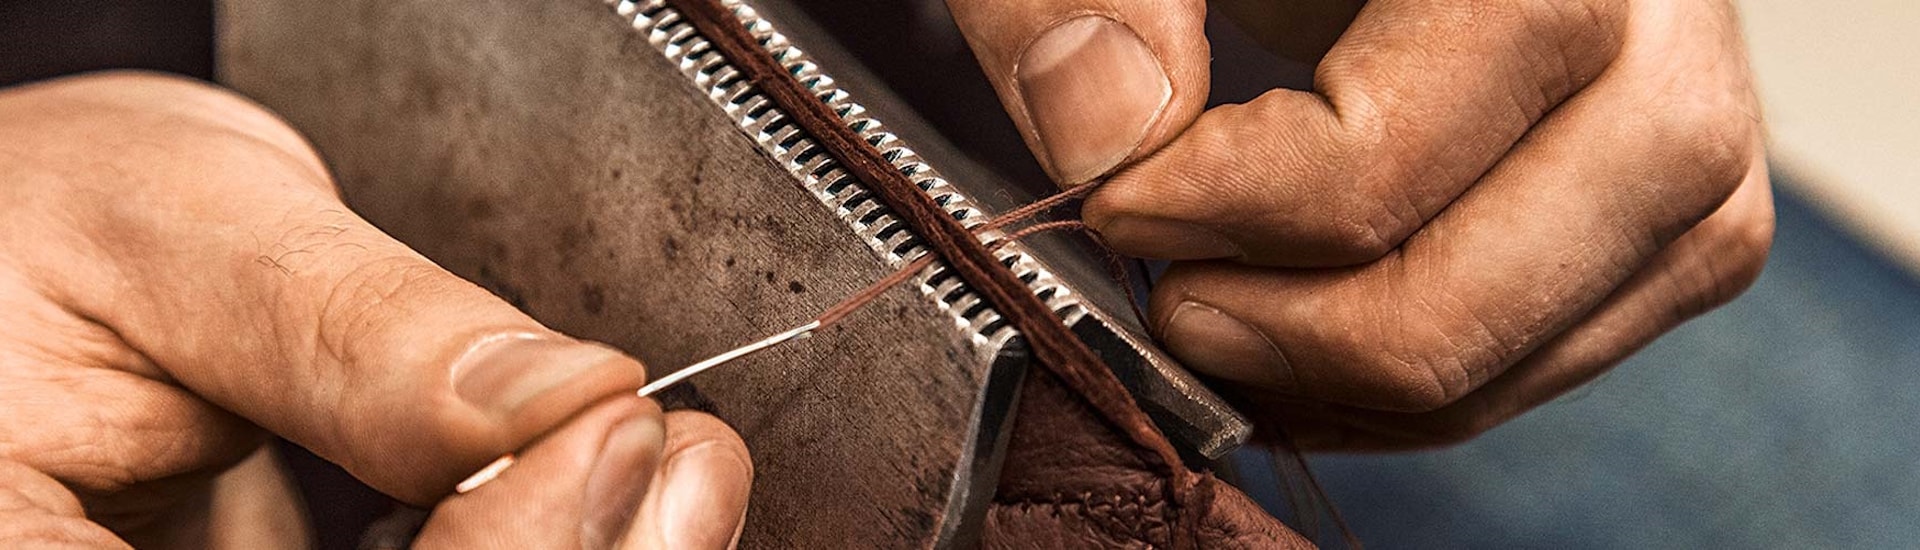 Der Lederhandschuh Timisoara in braun aus Peccaryleder wird von Hand genäht.